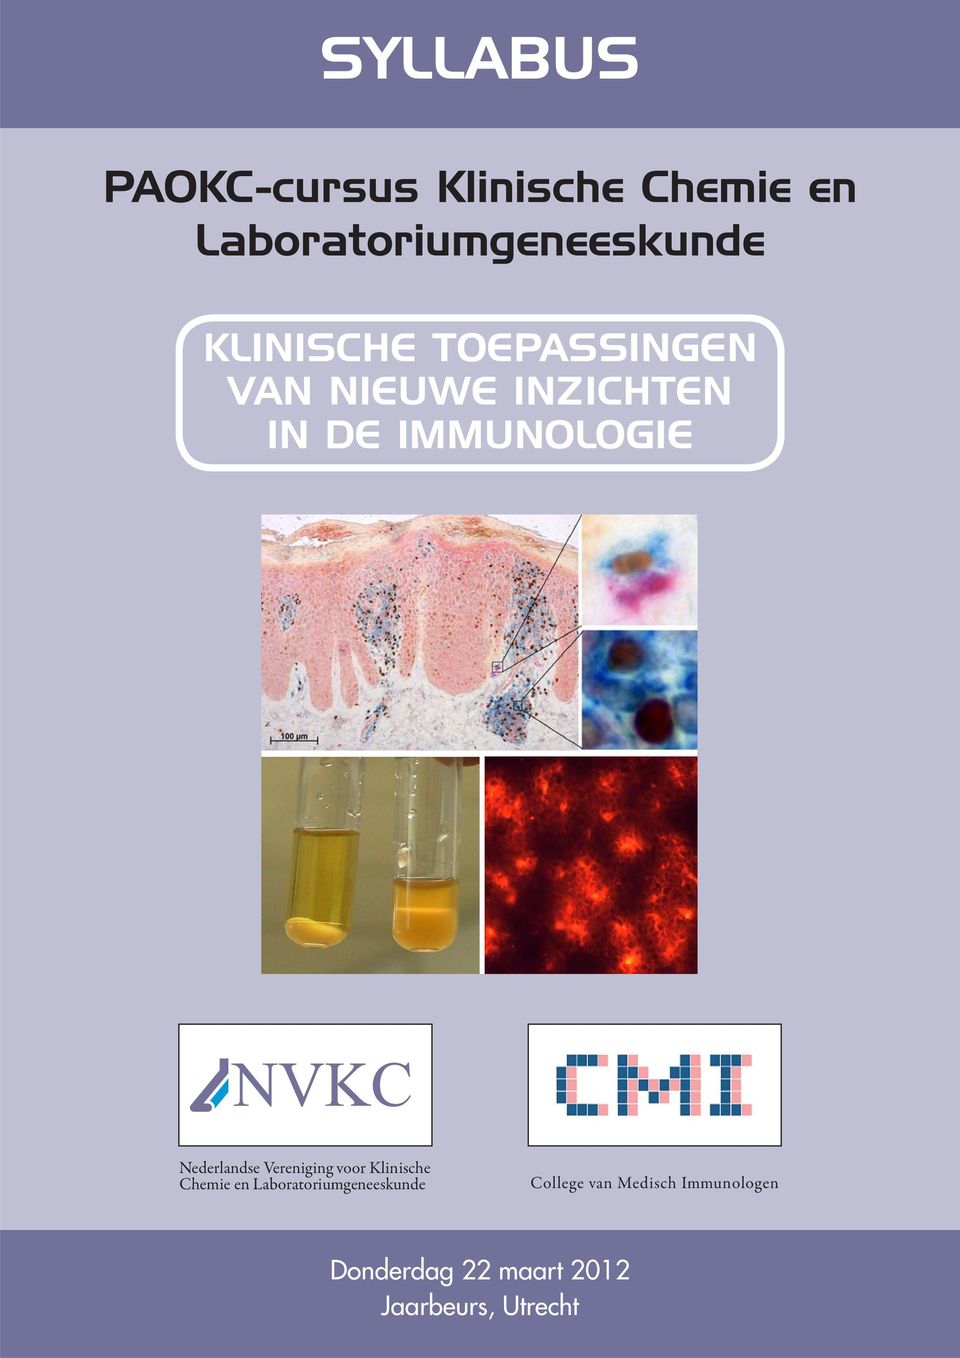 Nederlandse Vereniging voor Klinische Chemie en